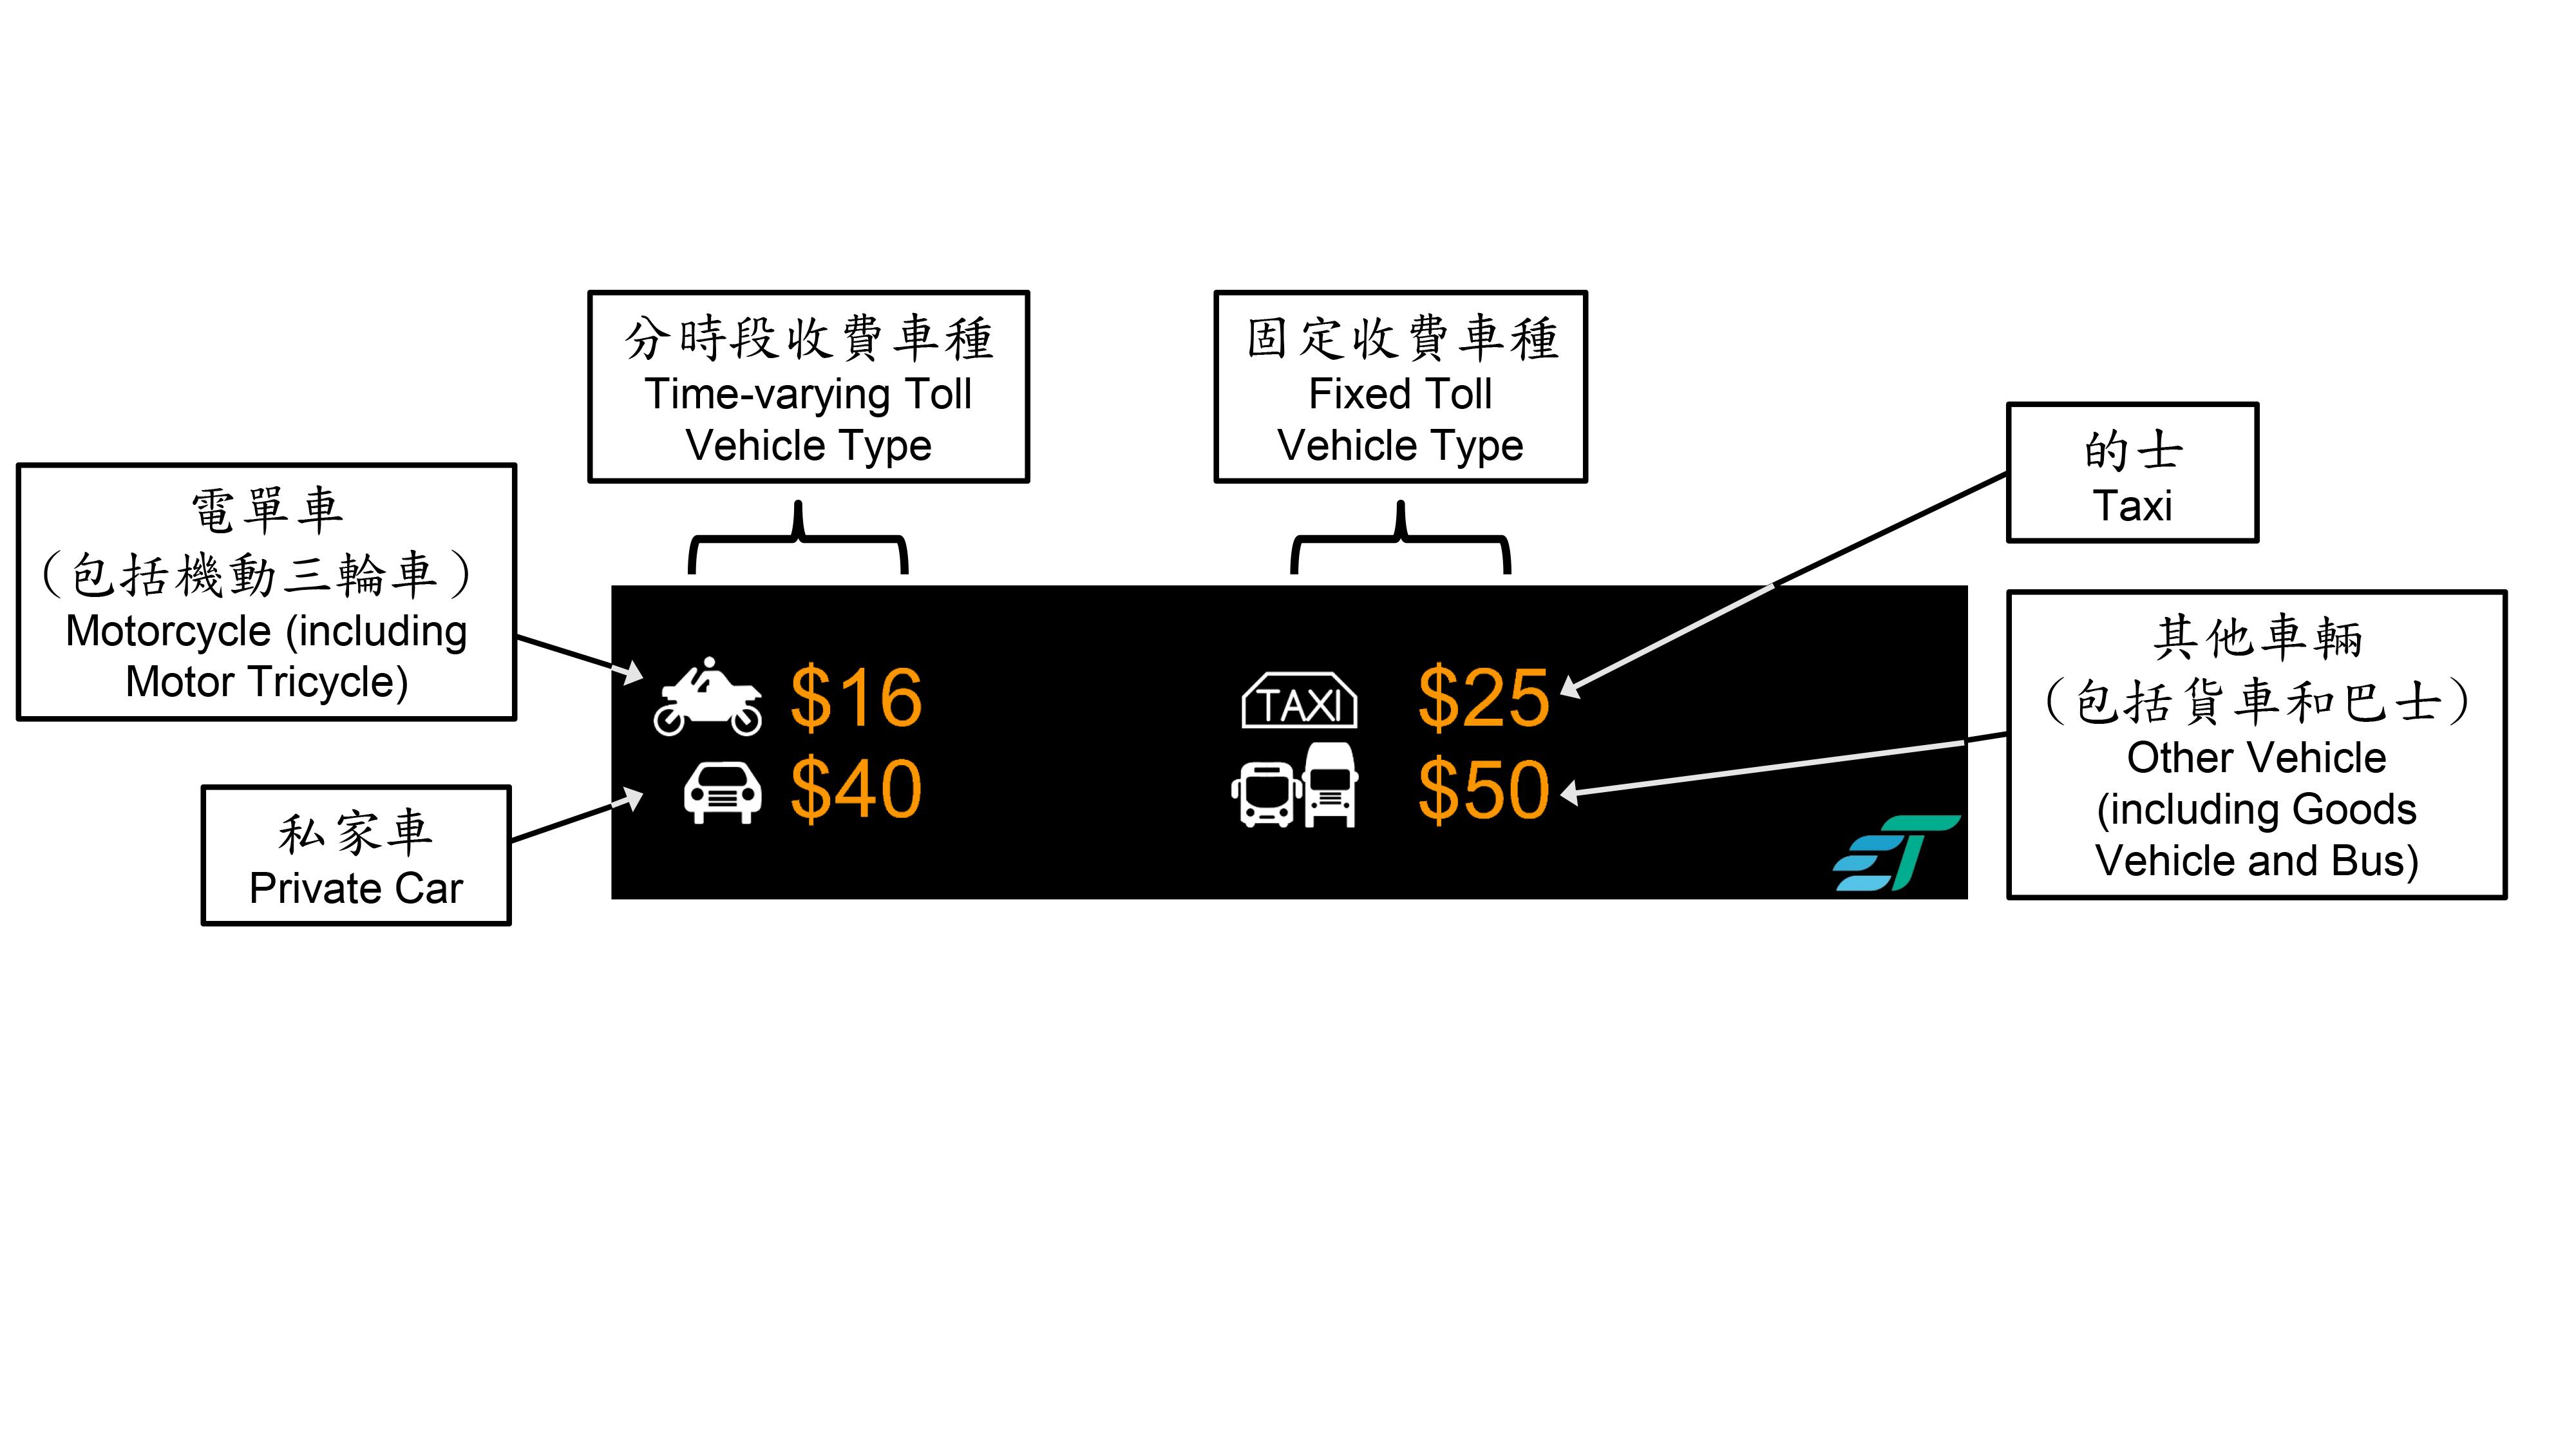 運輸署今日（十二月七日）表示，分時段收費十二月十七日上午五時實施後，隧道費顯示屏將顯示不同車種的實時收費資訊。圖示隧道費顯示屏的設計。